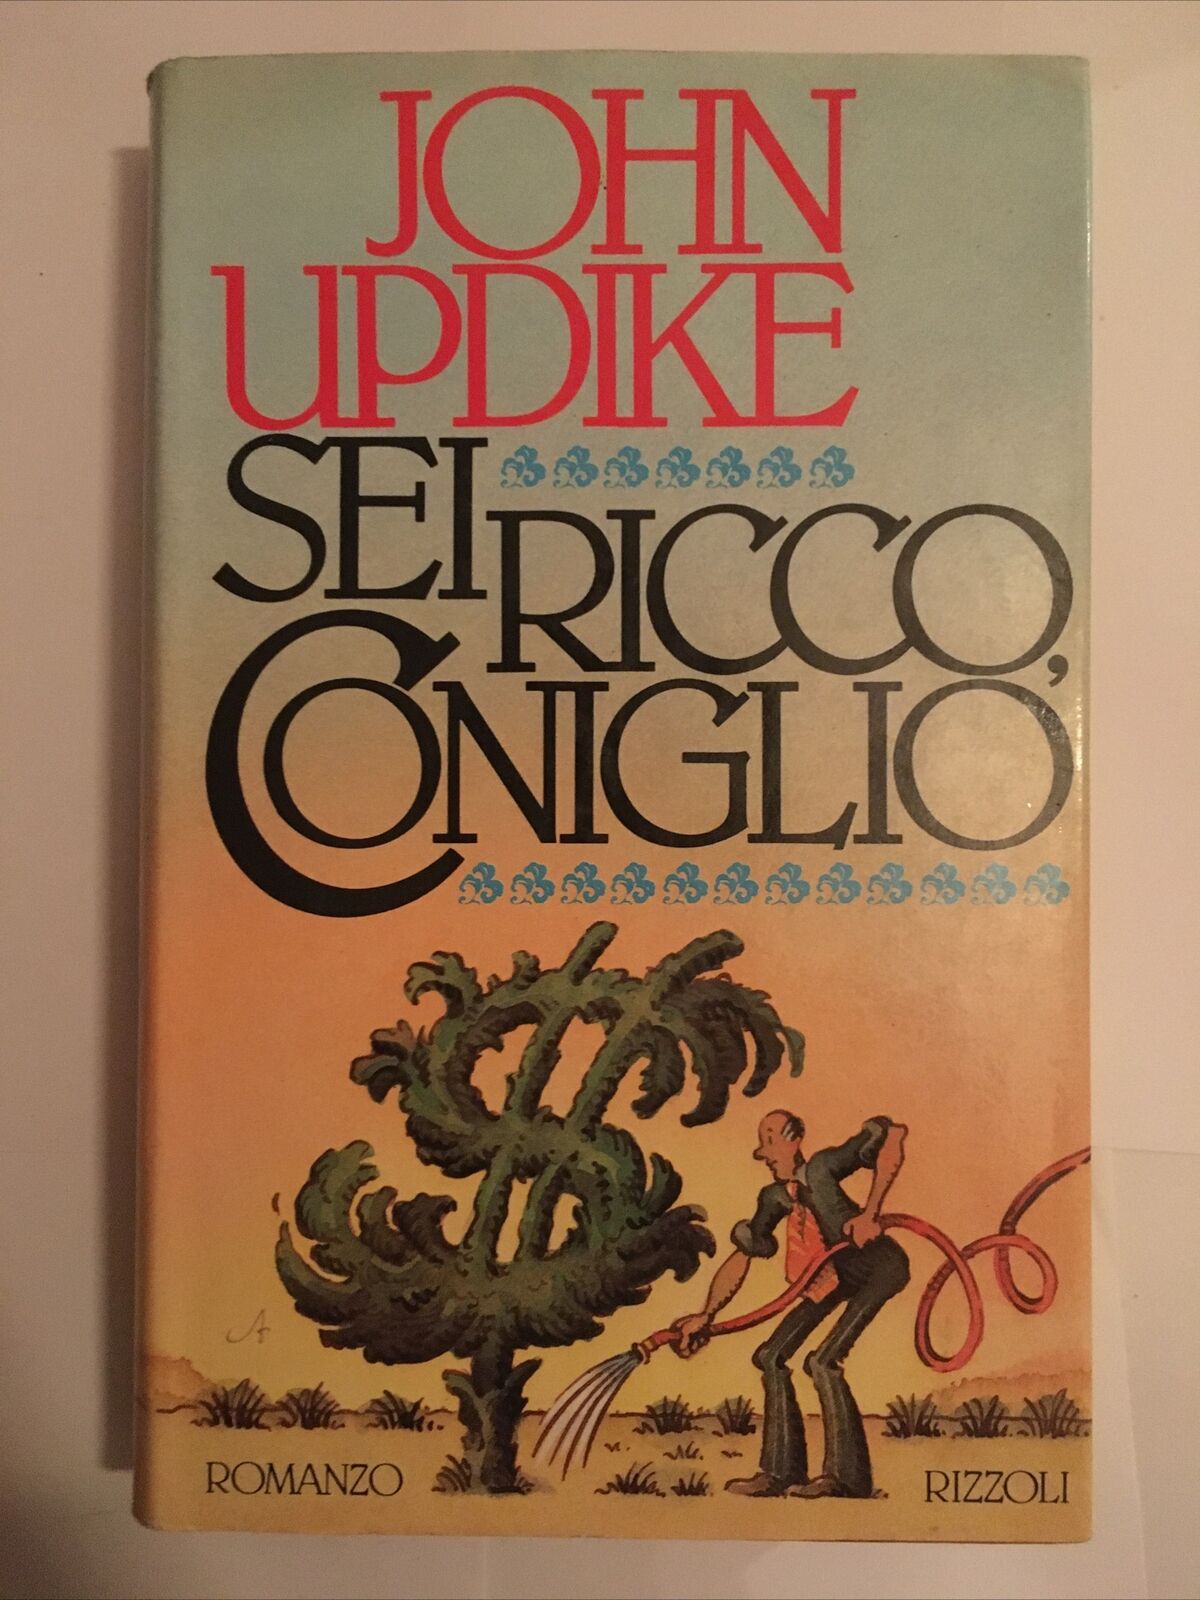 John Updike – Sei ricco, coniglio – Rizzoli, Milano 1983 – 1 ed. raro